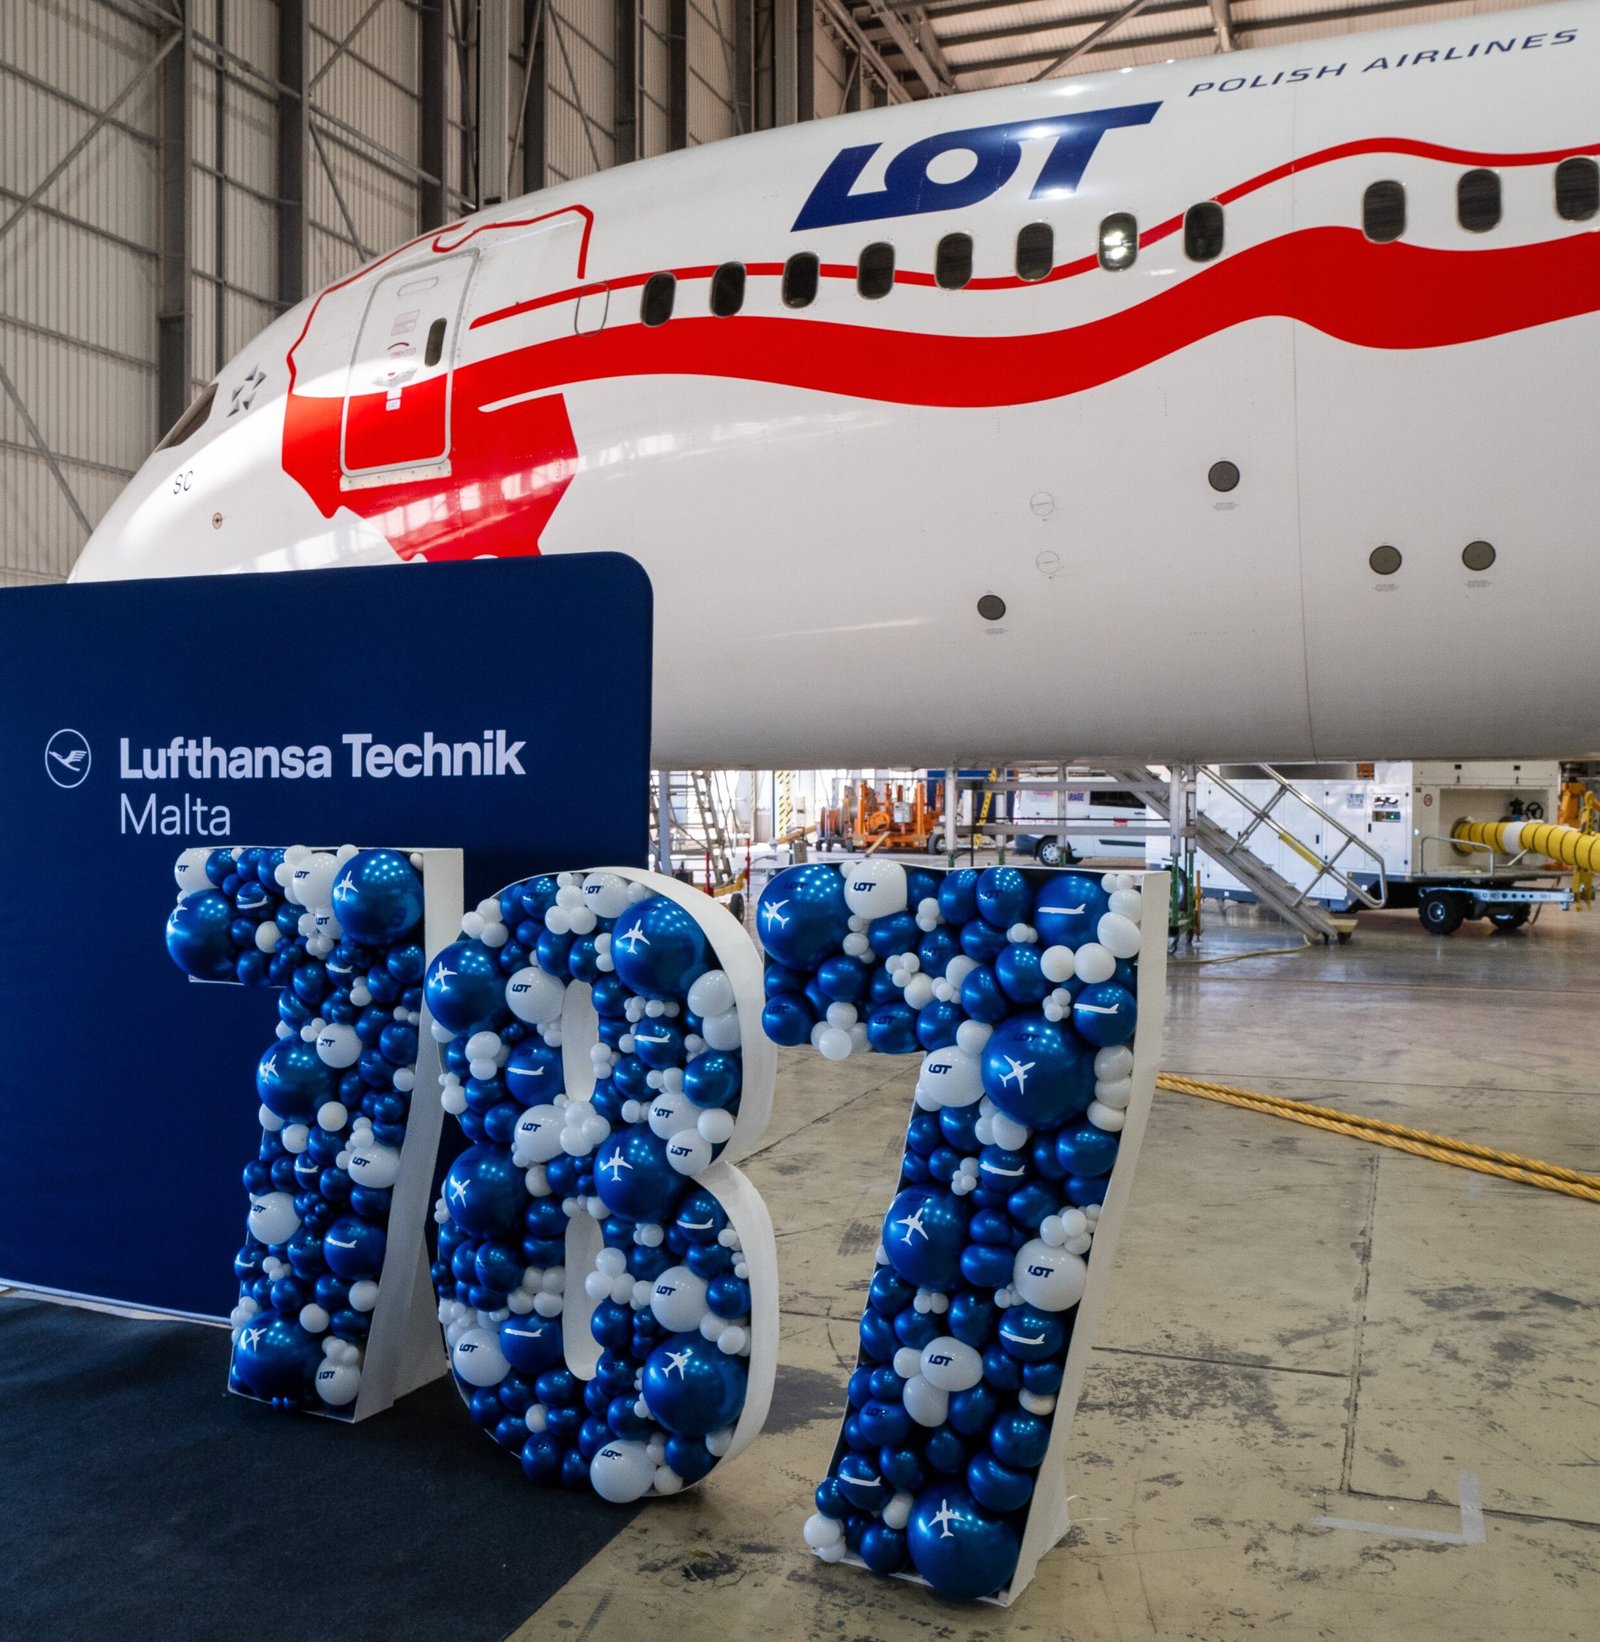 Ceremonia de entrega del 787 tras la revisión. Foto: Lufthansa Technik